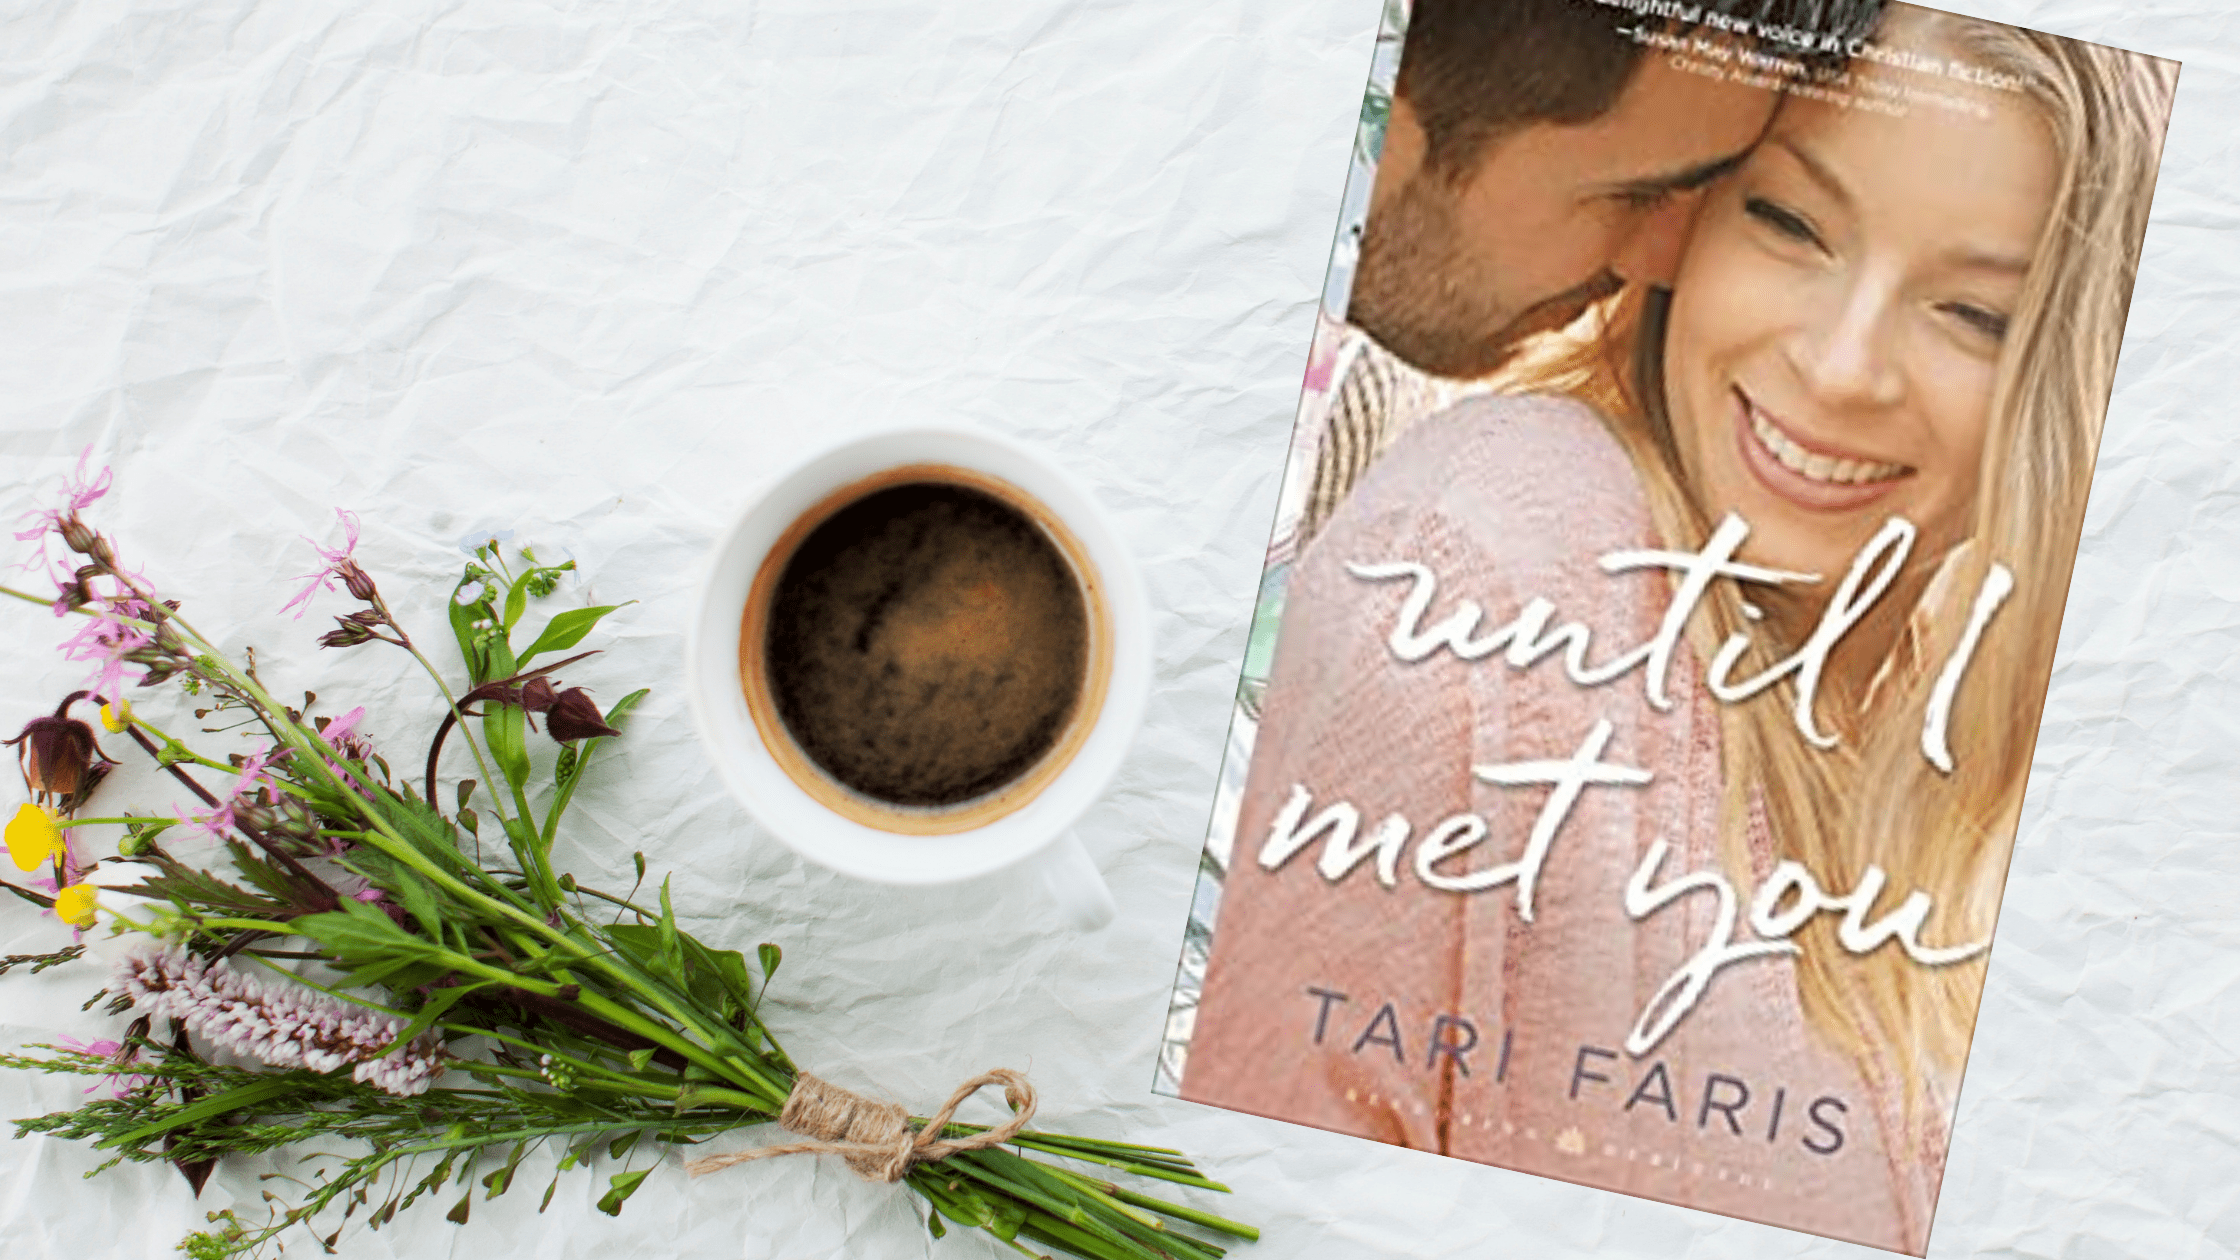 Book Review: Until I Met You by Tari Faris